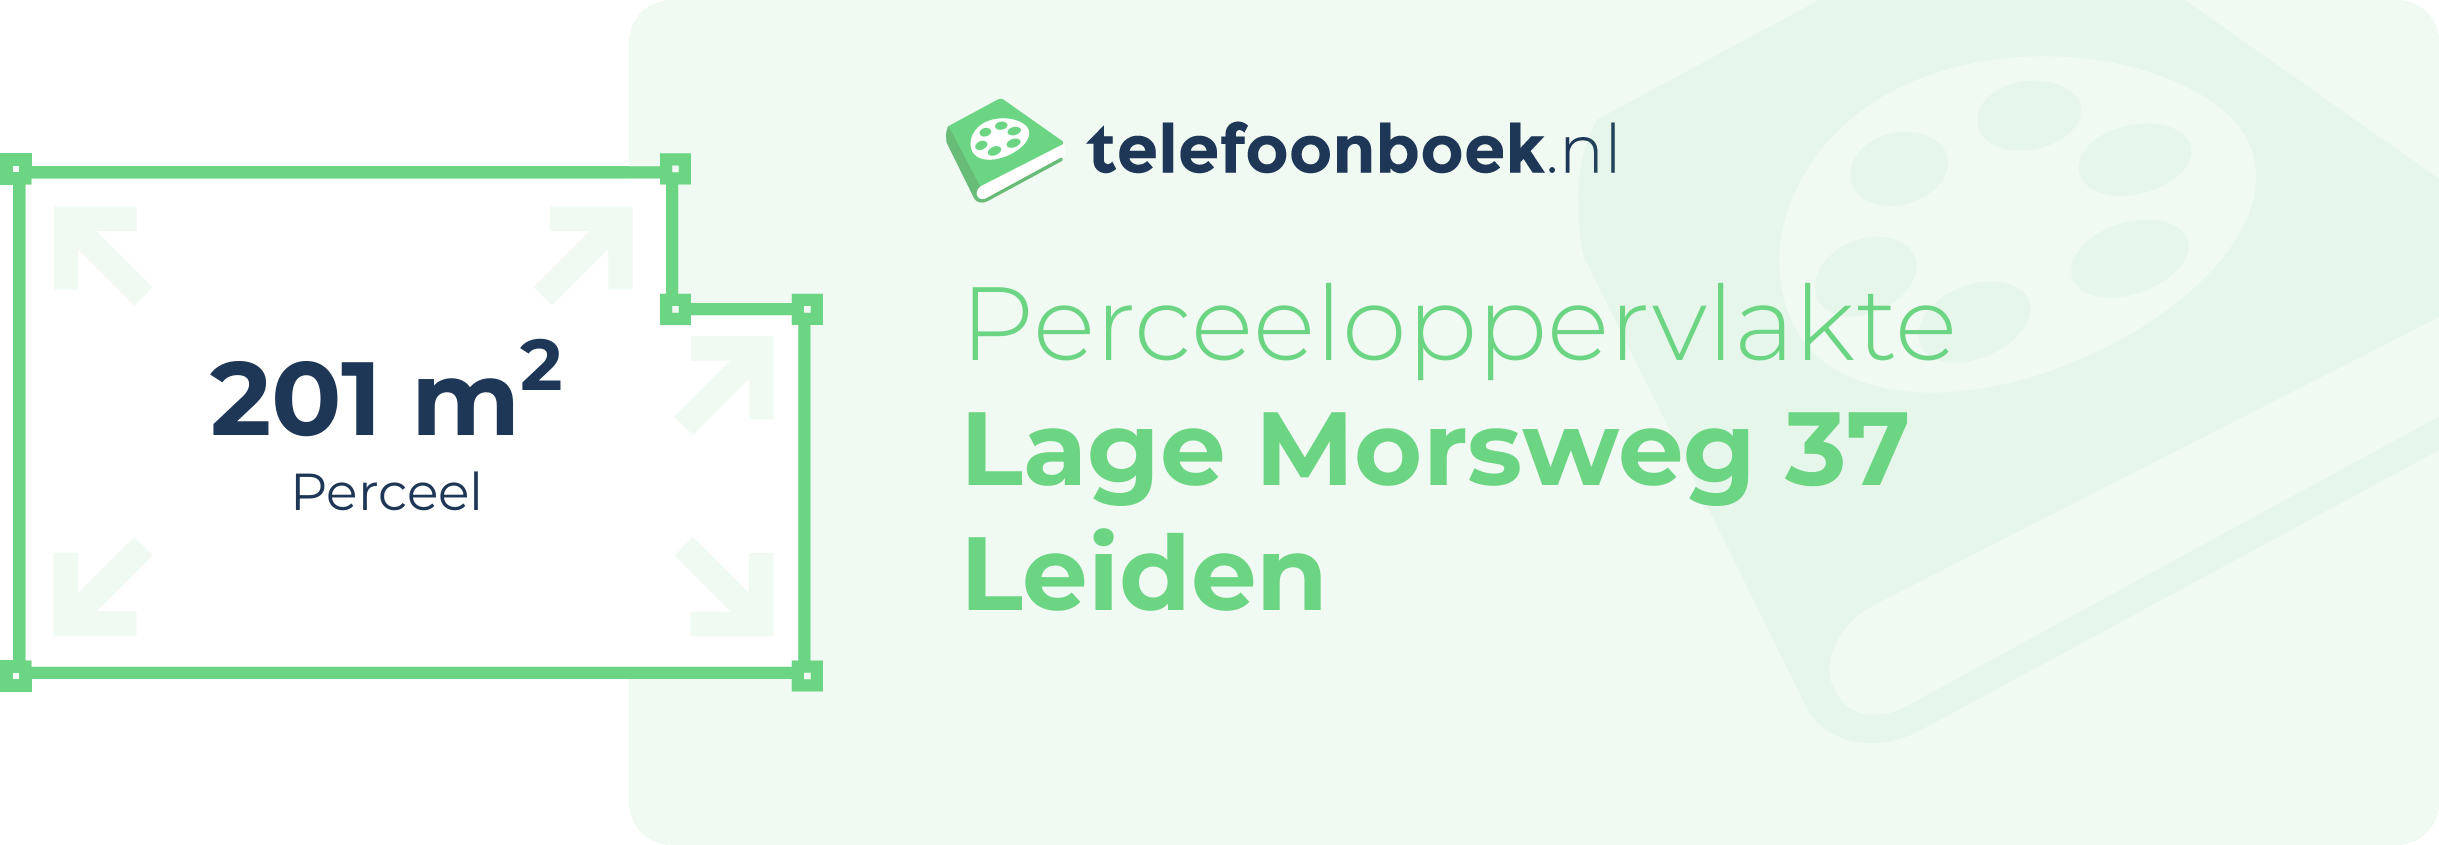 Perceeloppervlakte Lage Morsweg 37 Leiden